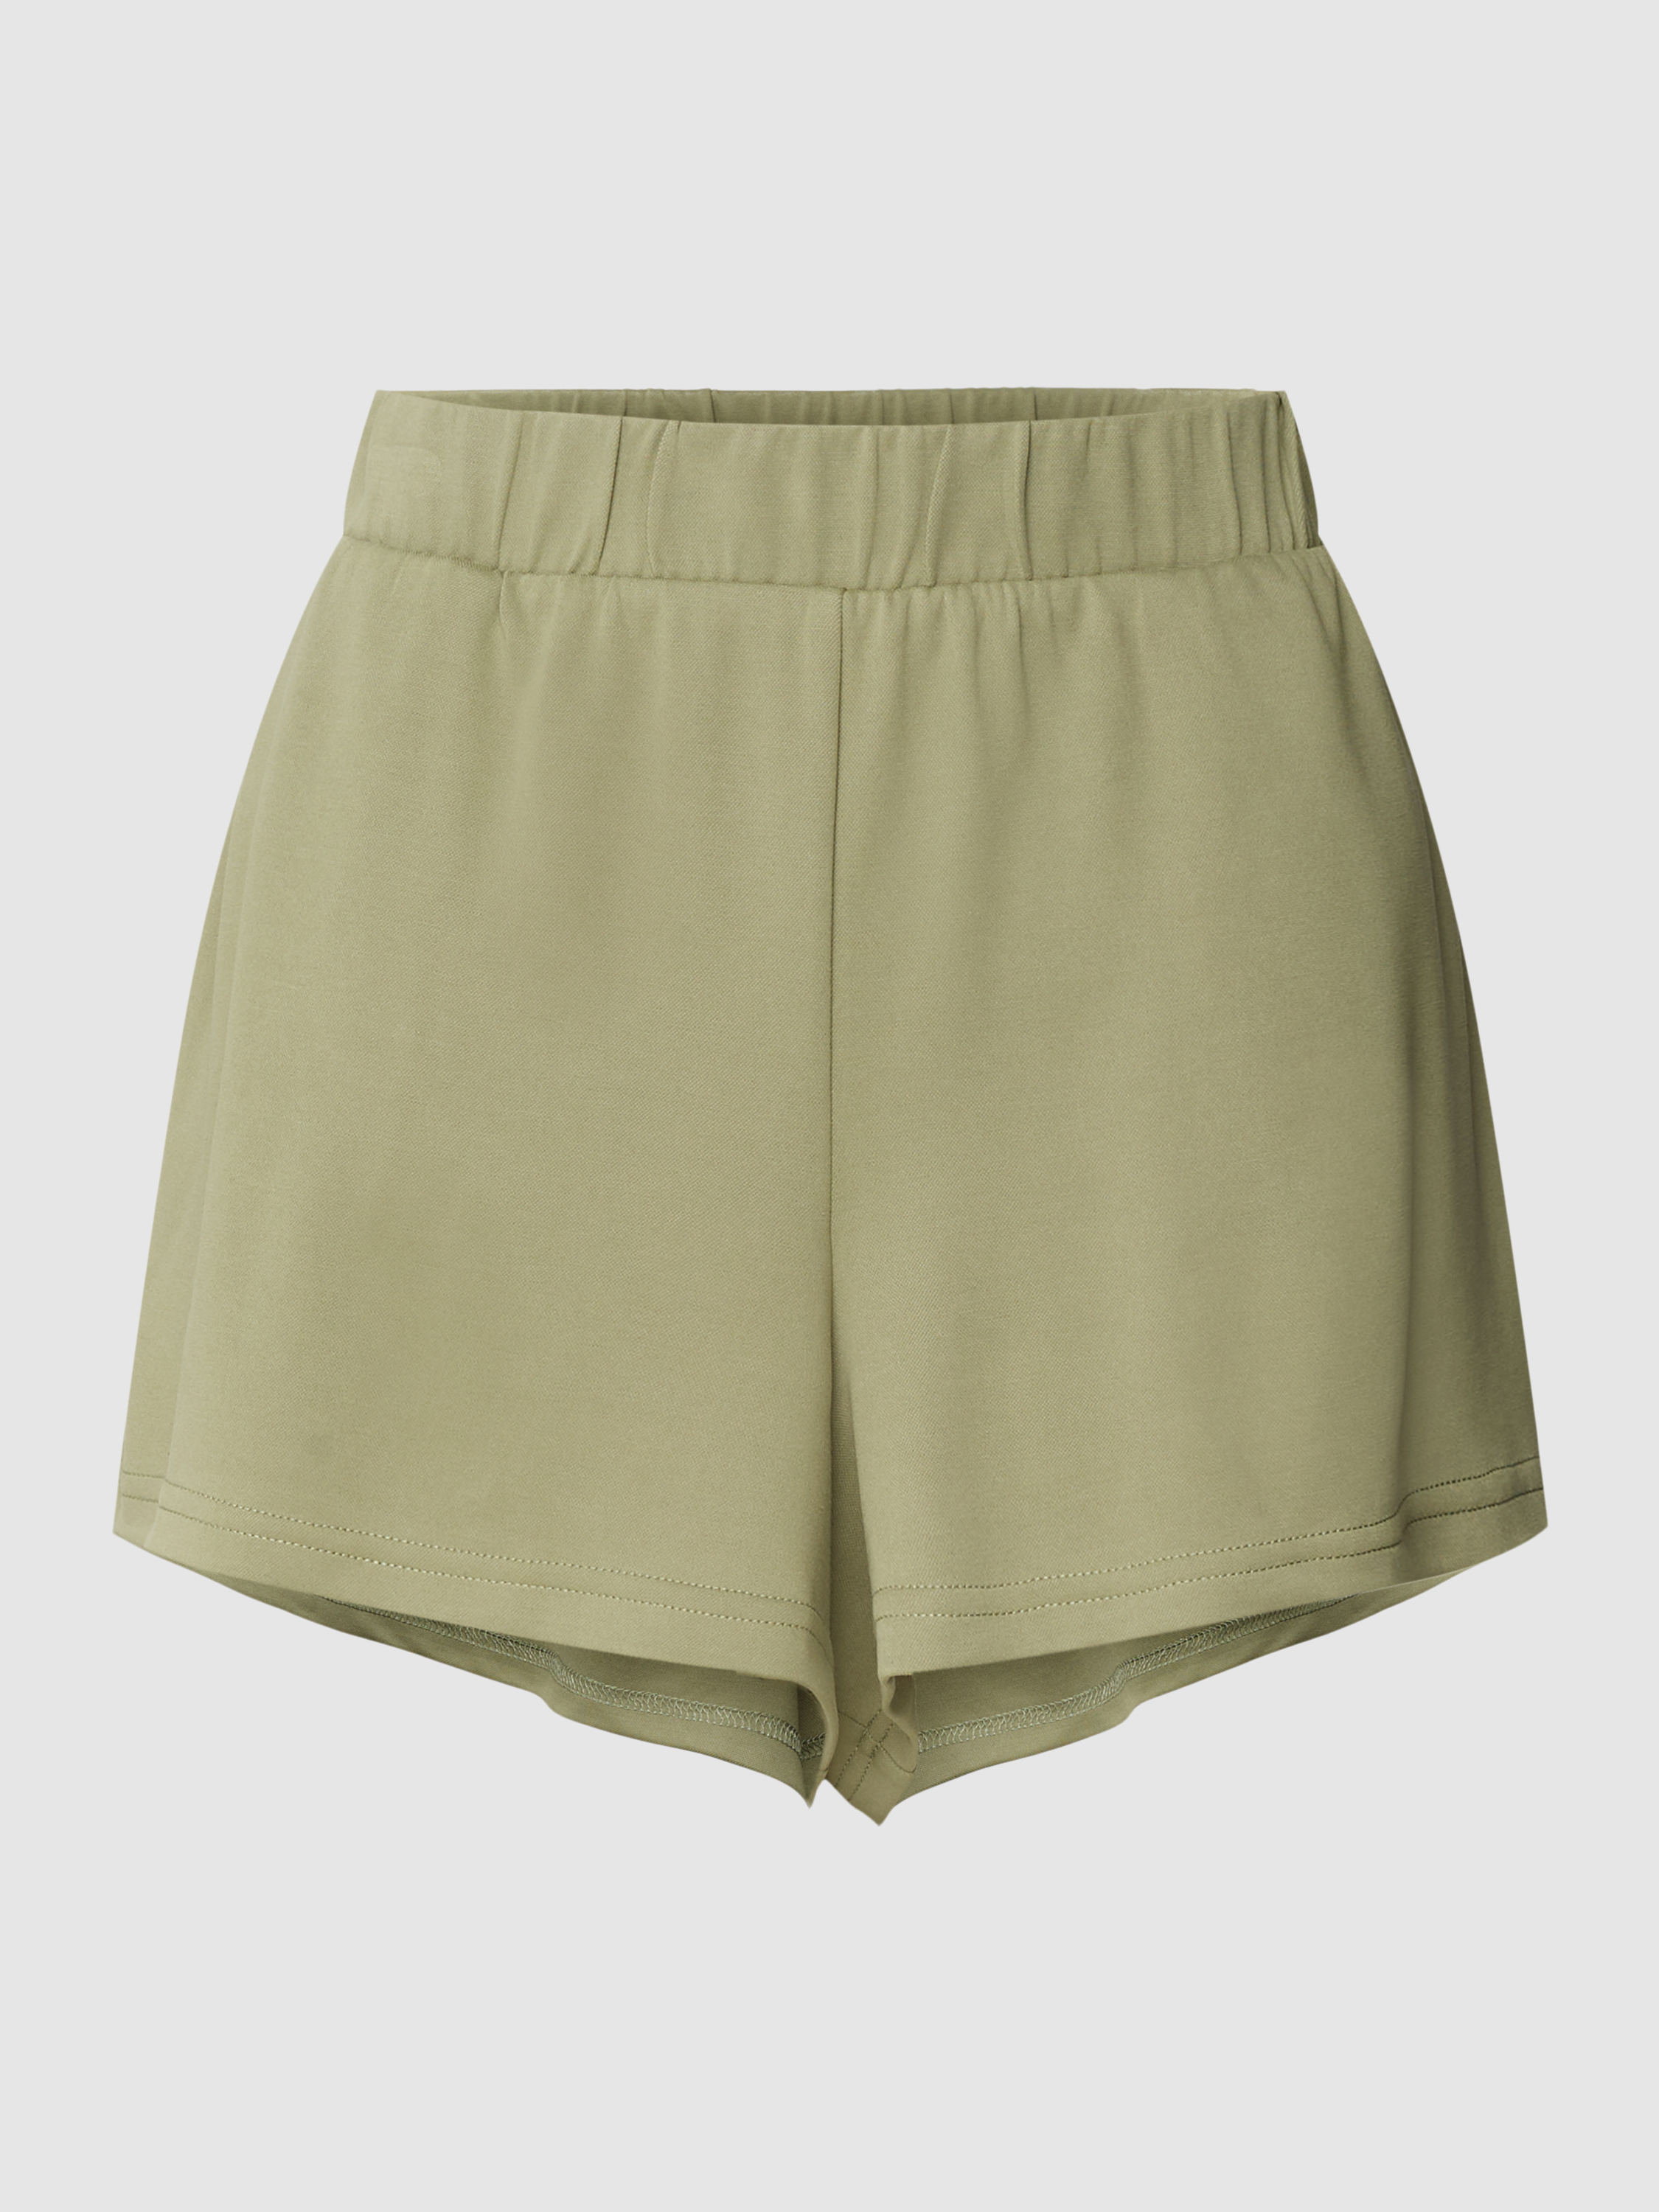 Повседневные шорты женские Review 1764564 зеленые XL (доставка из-за рубежа)